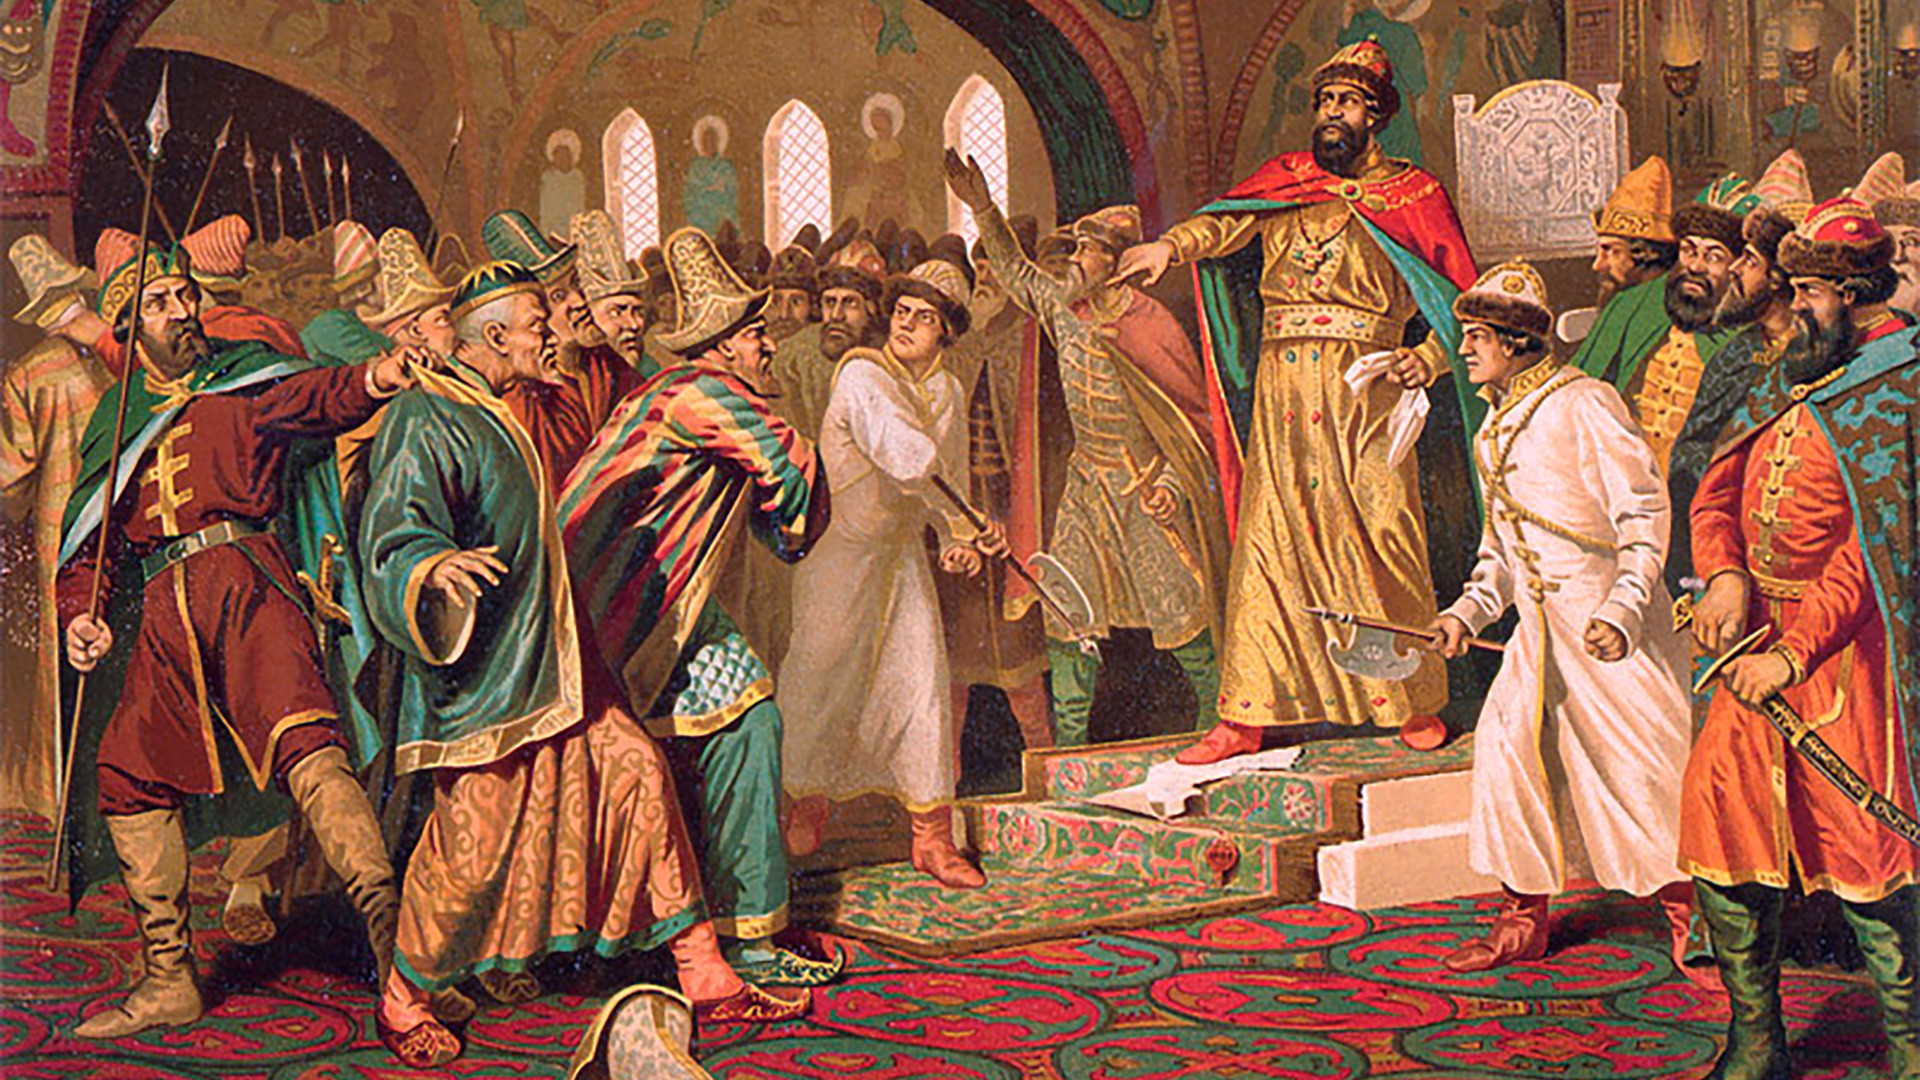 
Иван III цепа каново писмо, Алексеј Кившенко. Према легенди, Иван III је поцепао Ахматово писмо у коме је овај тражио да се плати данак. 